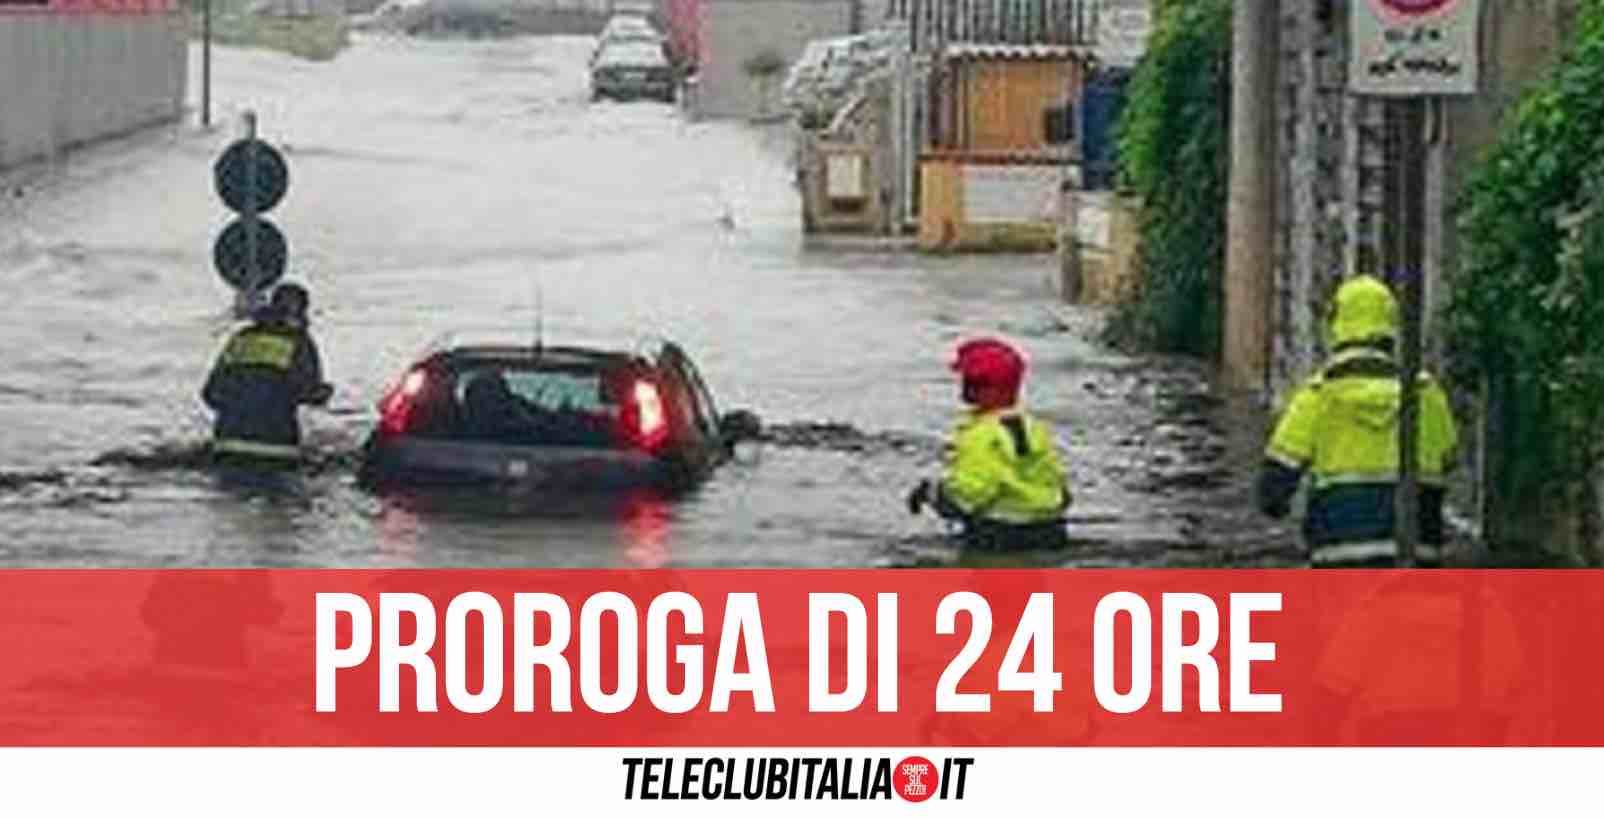 Campania nella morsa del maltempo: prorogata allerta meteo di 24 ore